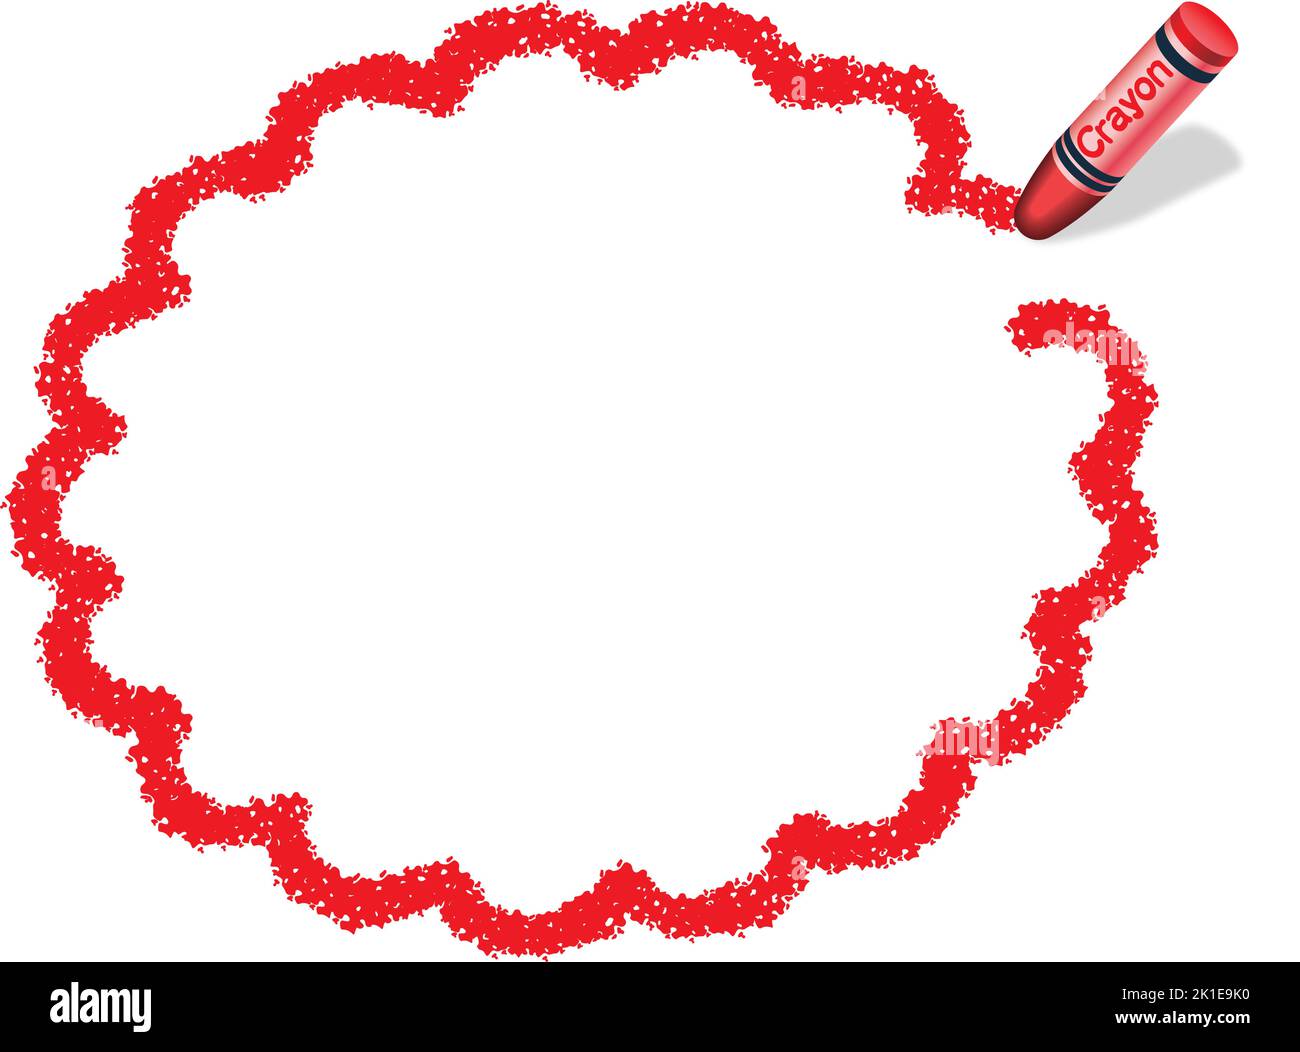 Vektor handgezeichneter roter Blumenkreis Crayon Texture Rahmen isoliert auf Weißem Hintergrund. Stock Vektor